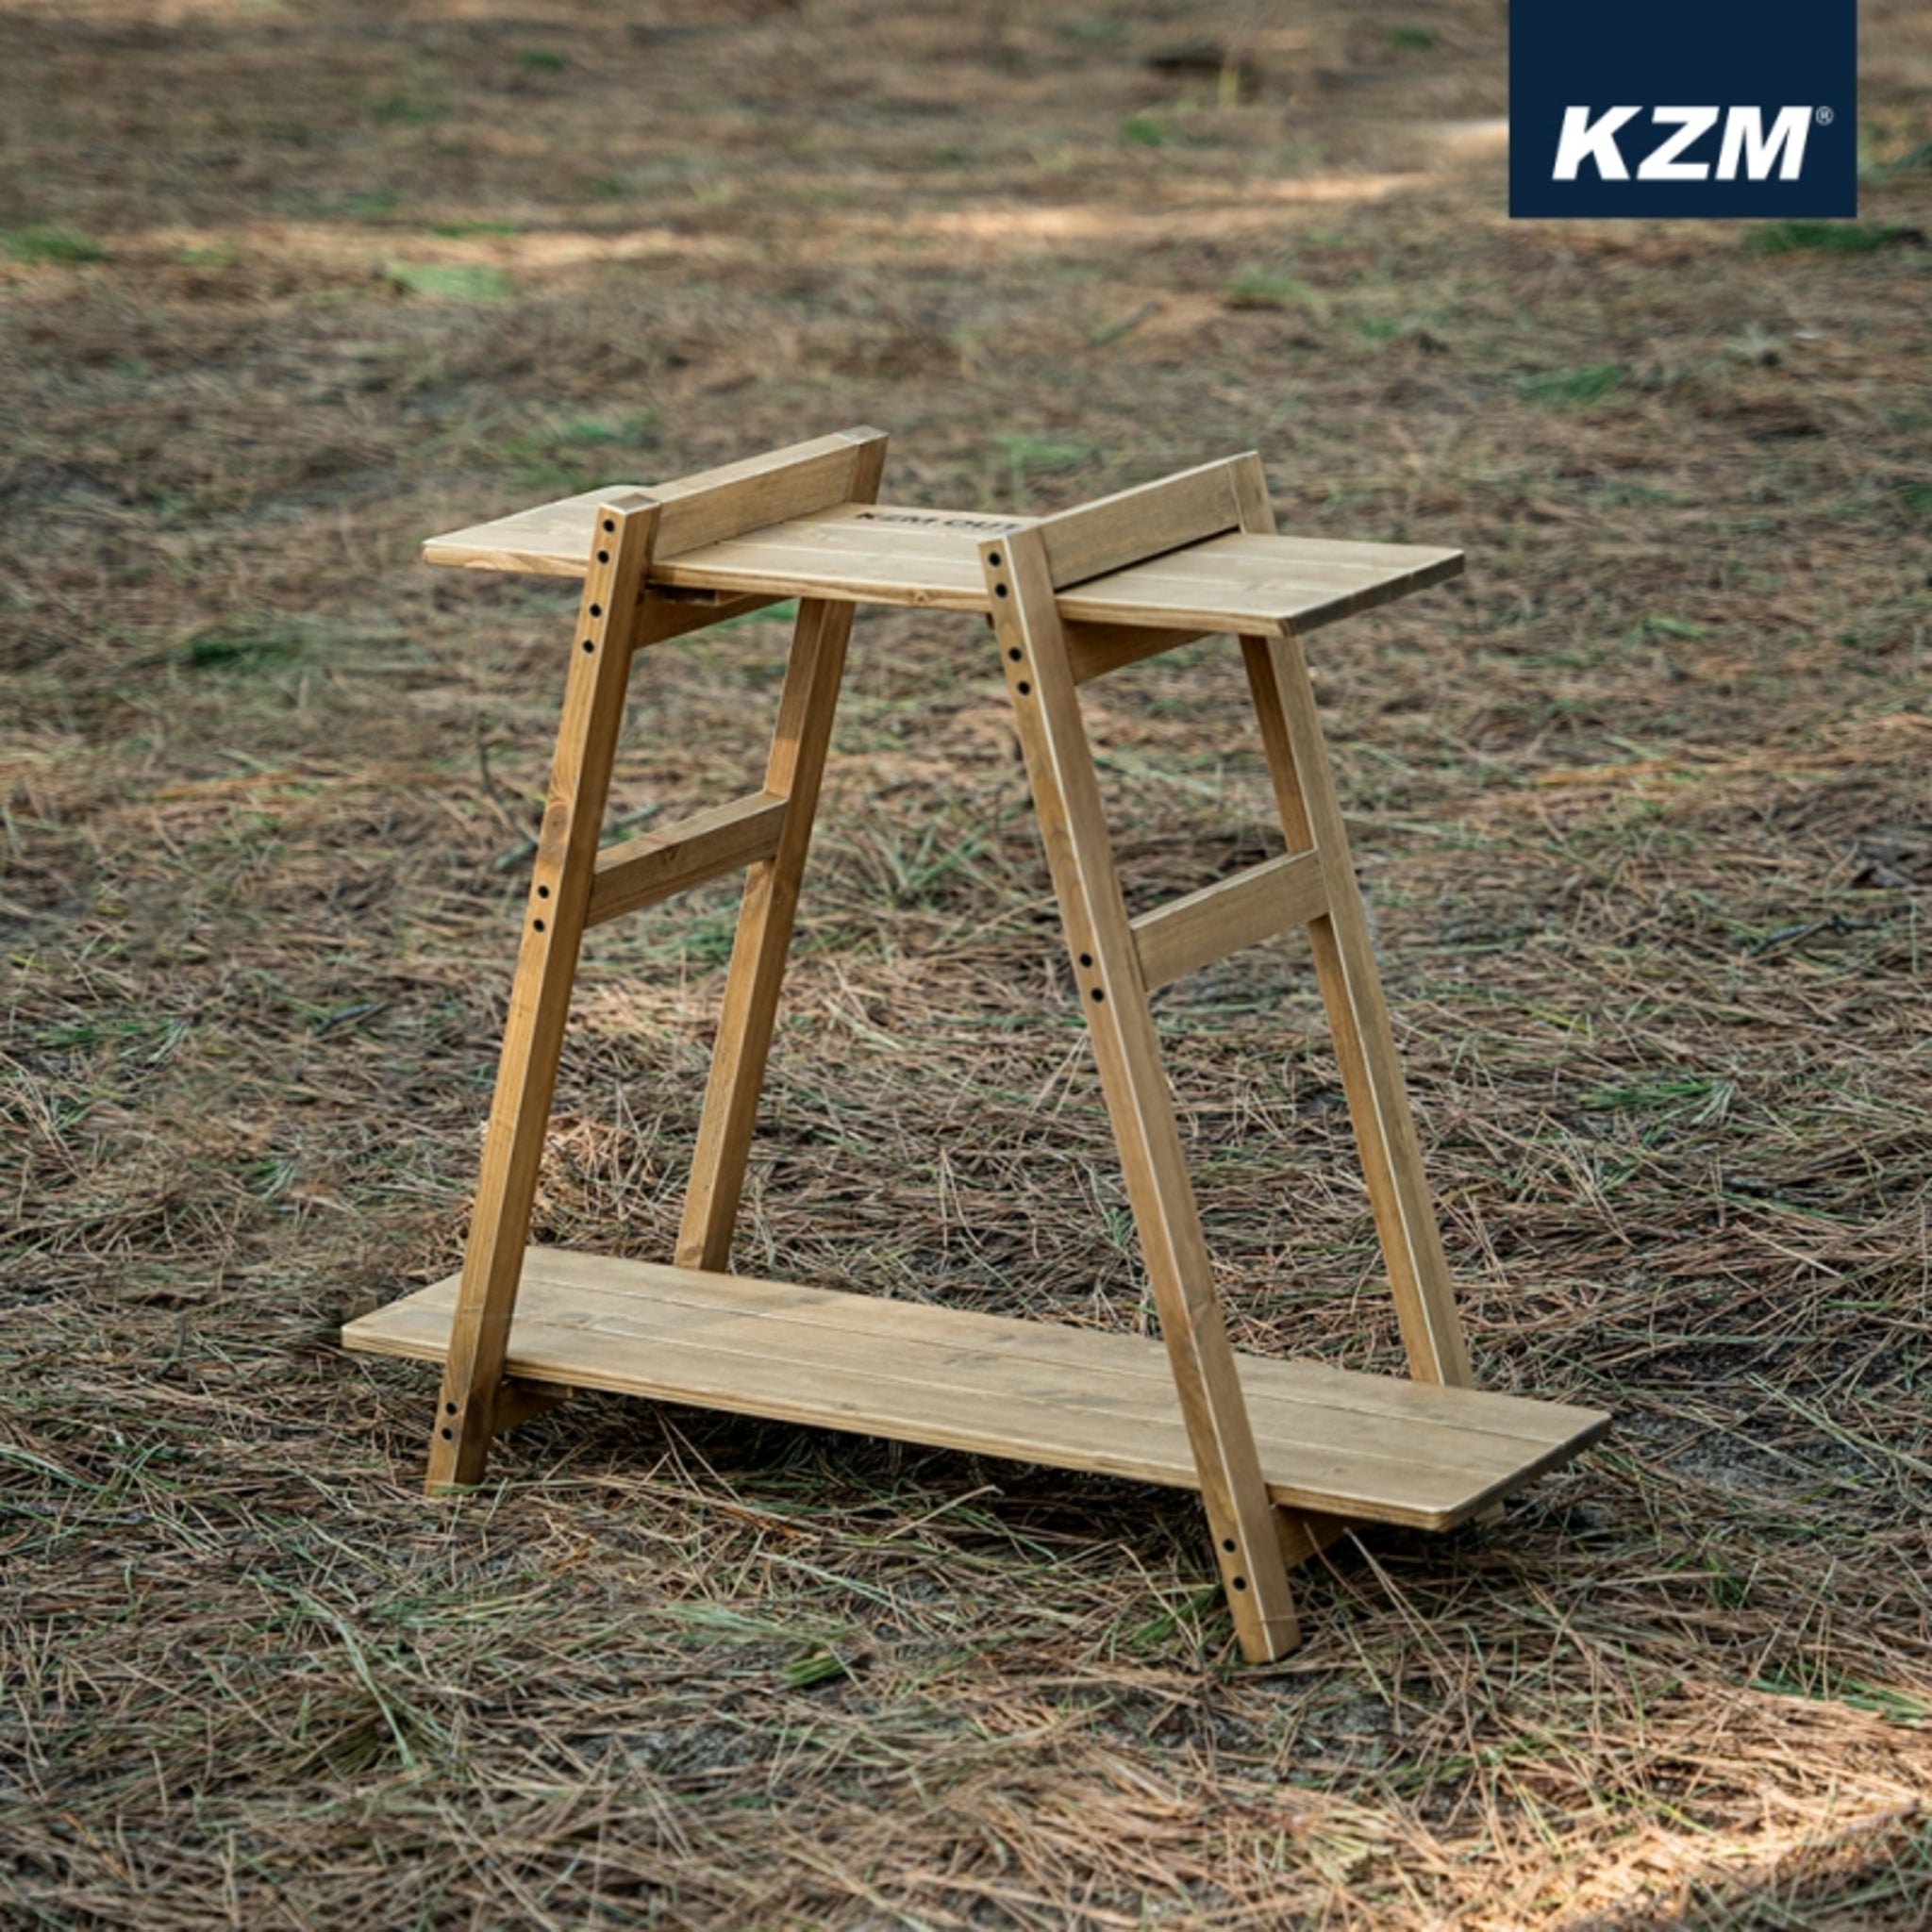 KAZMI KZM 手作組合式原木層架 L K22T3U07